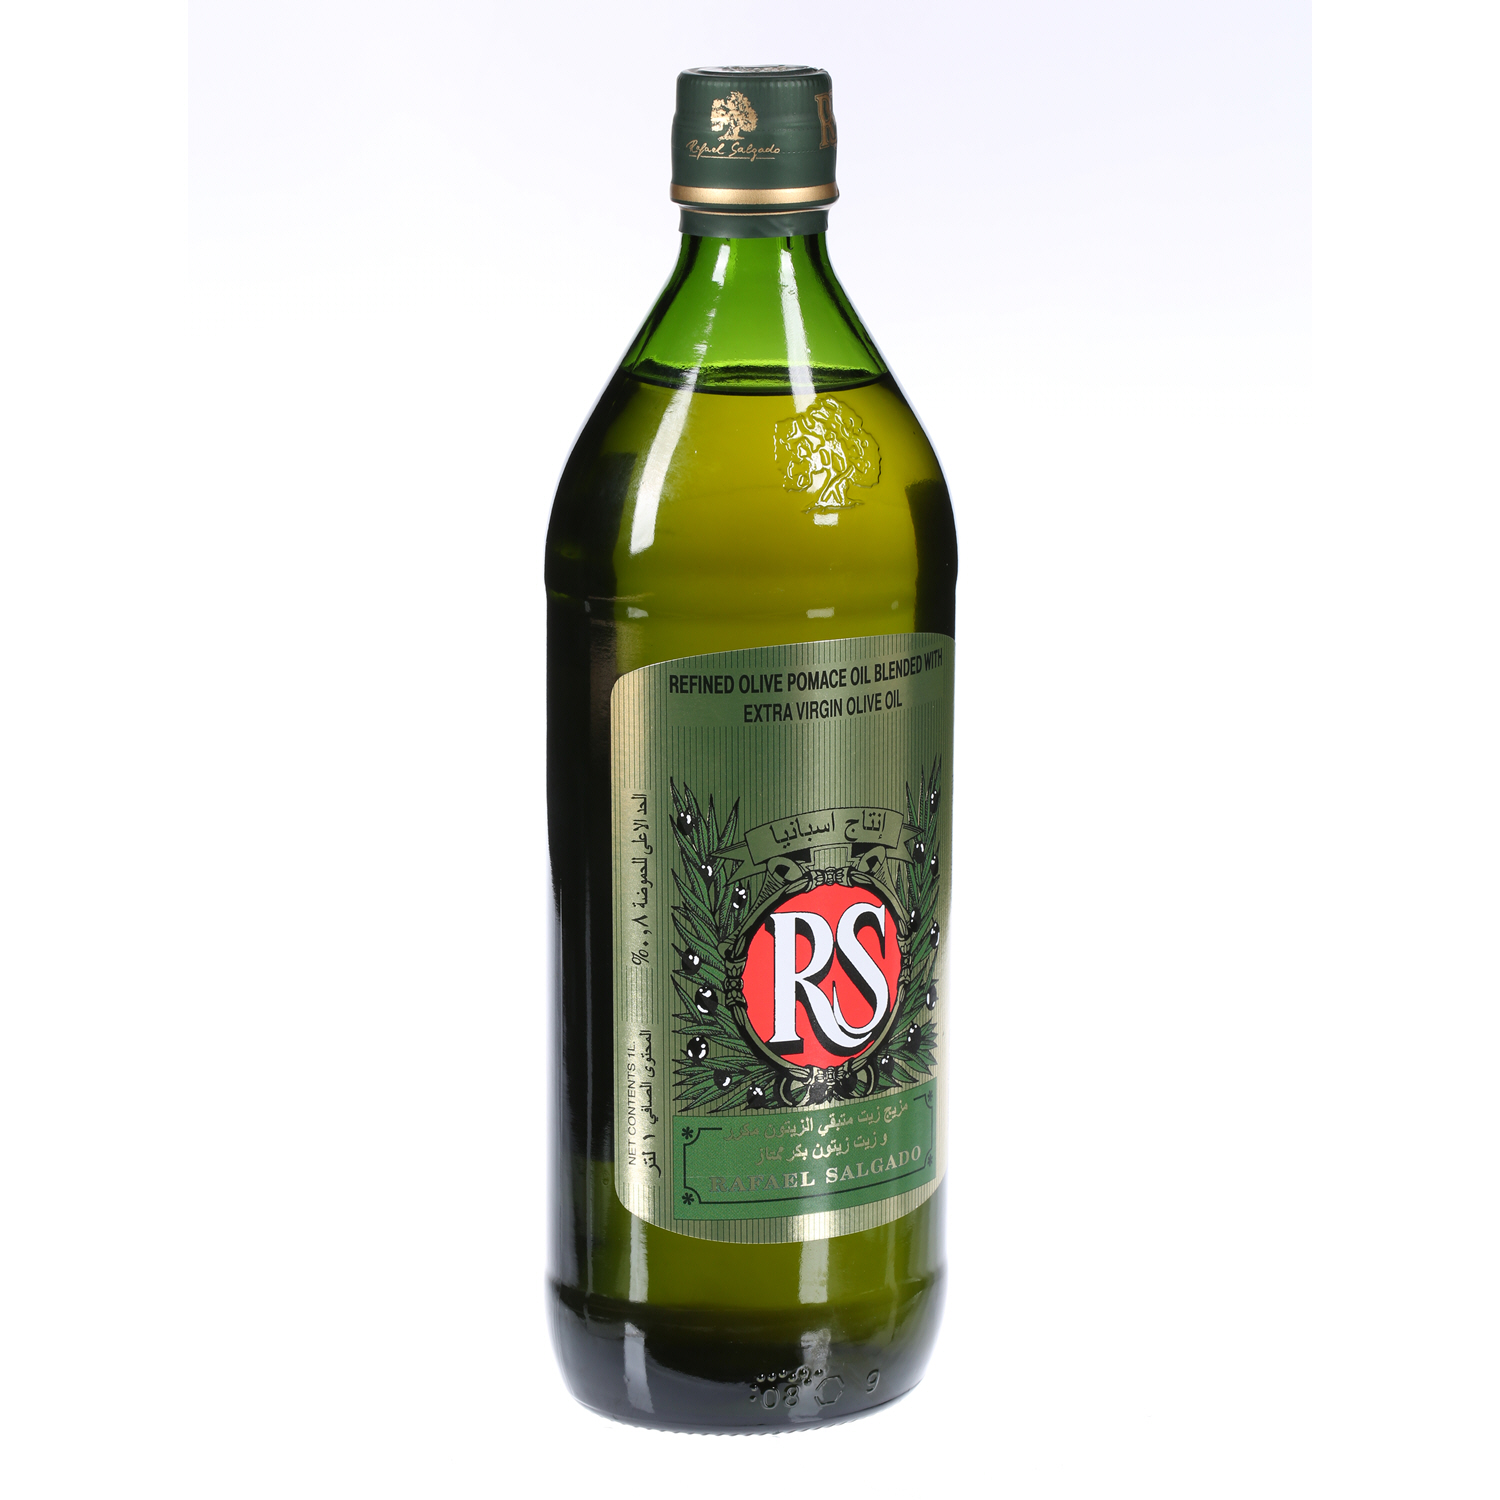 Rafael Salgado Olive Oil Square Bottle 1Ltr